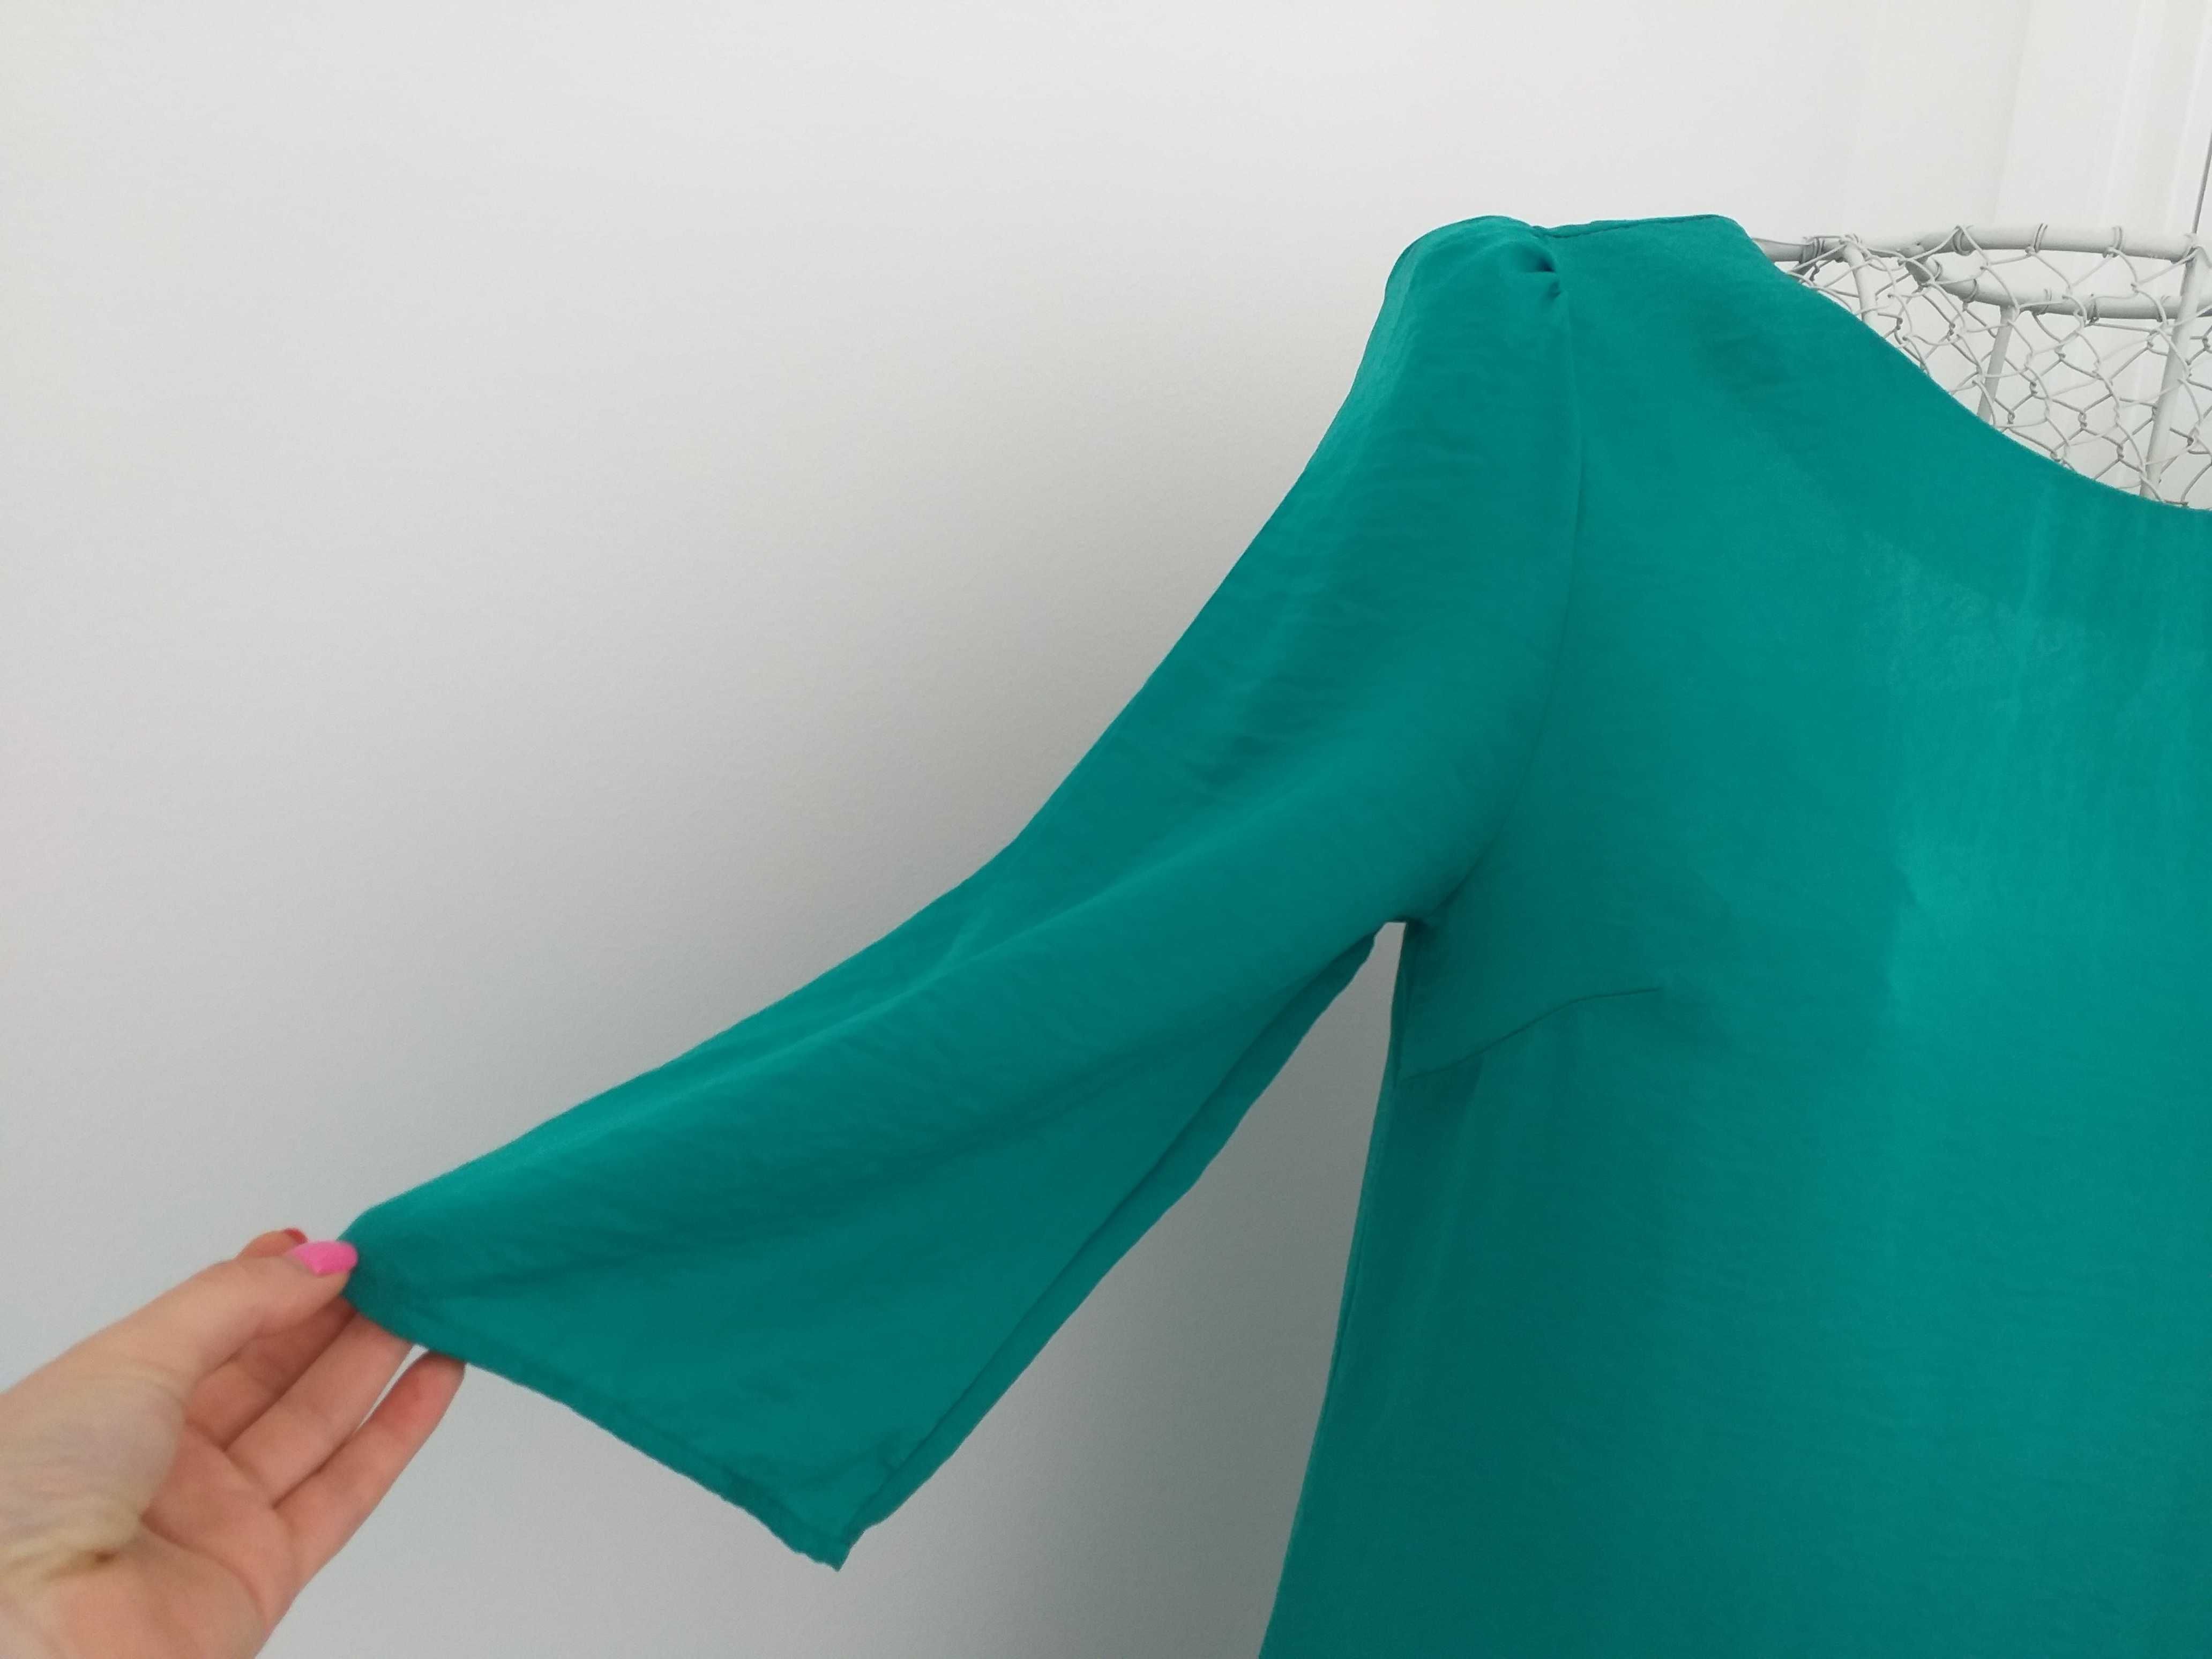 Vestido verde esmeralda com detalhe nas costas e mangas 3/4 S